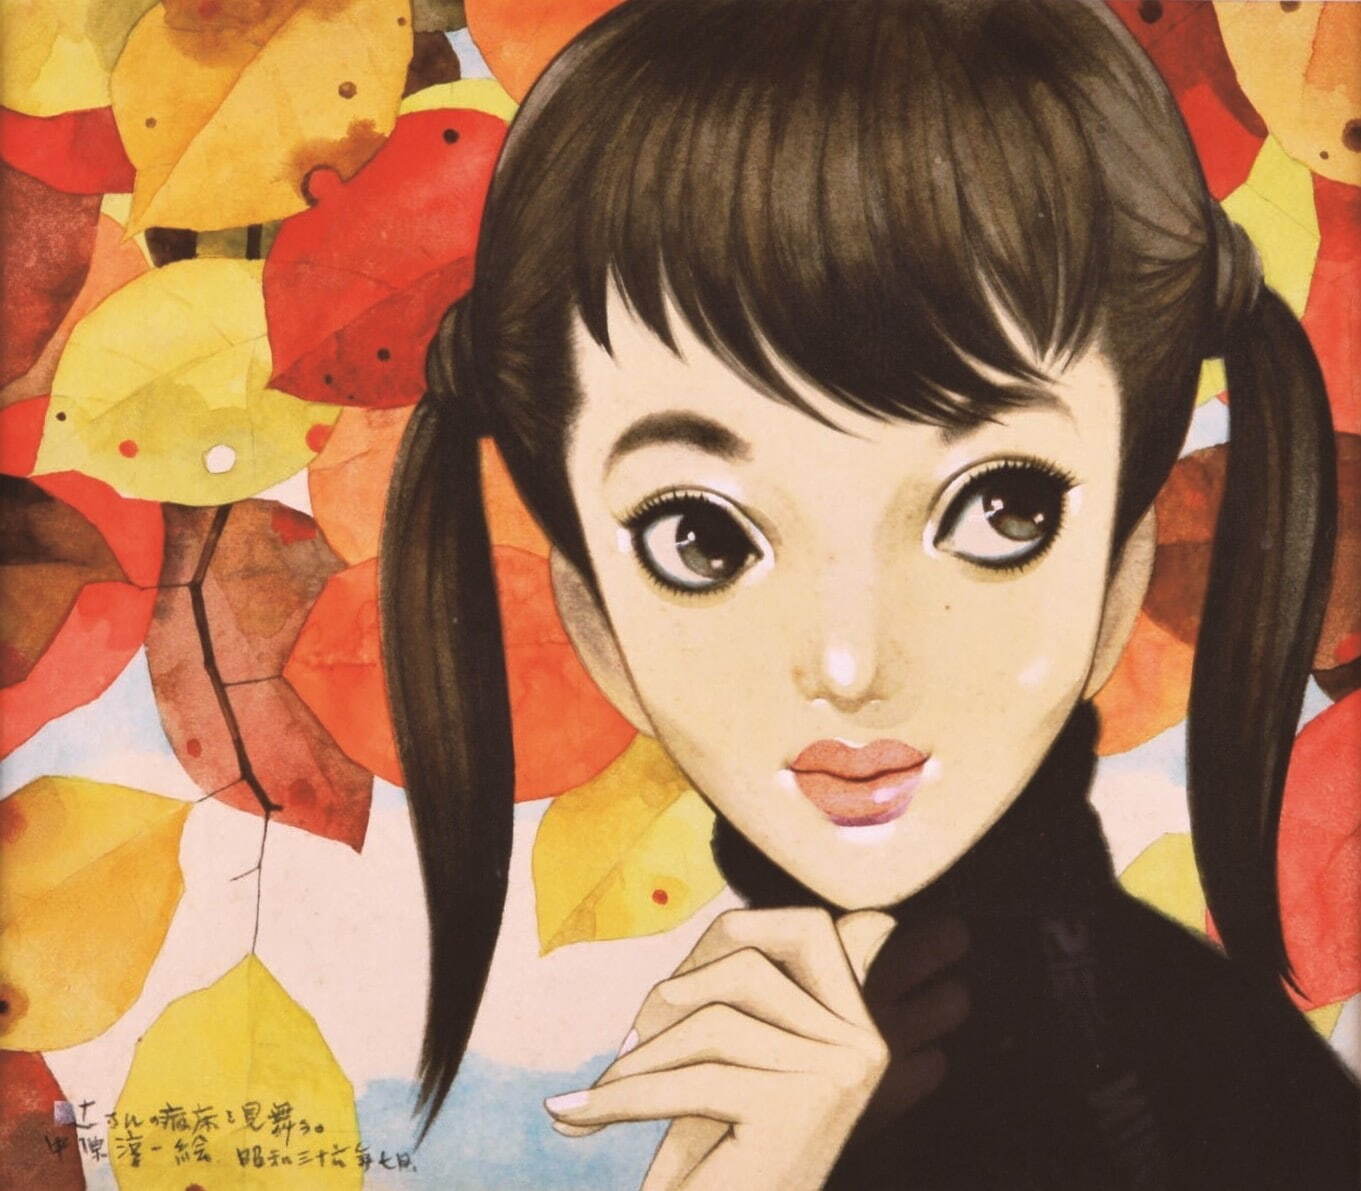 中原淳一 《表紙原画(『ジュニアそれいゆ』第24号)》 1958年 個人蔵
©JUNICHI NAKAHARA / HIMAWARIYA